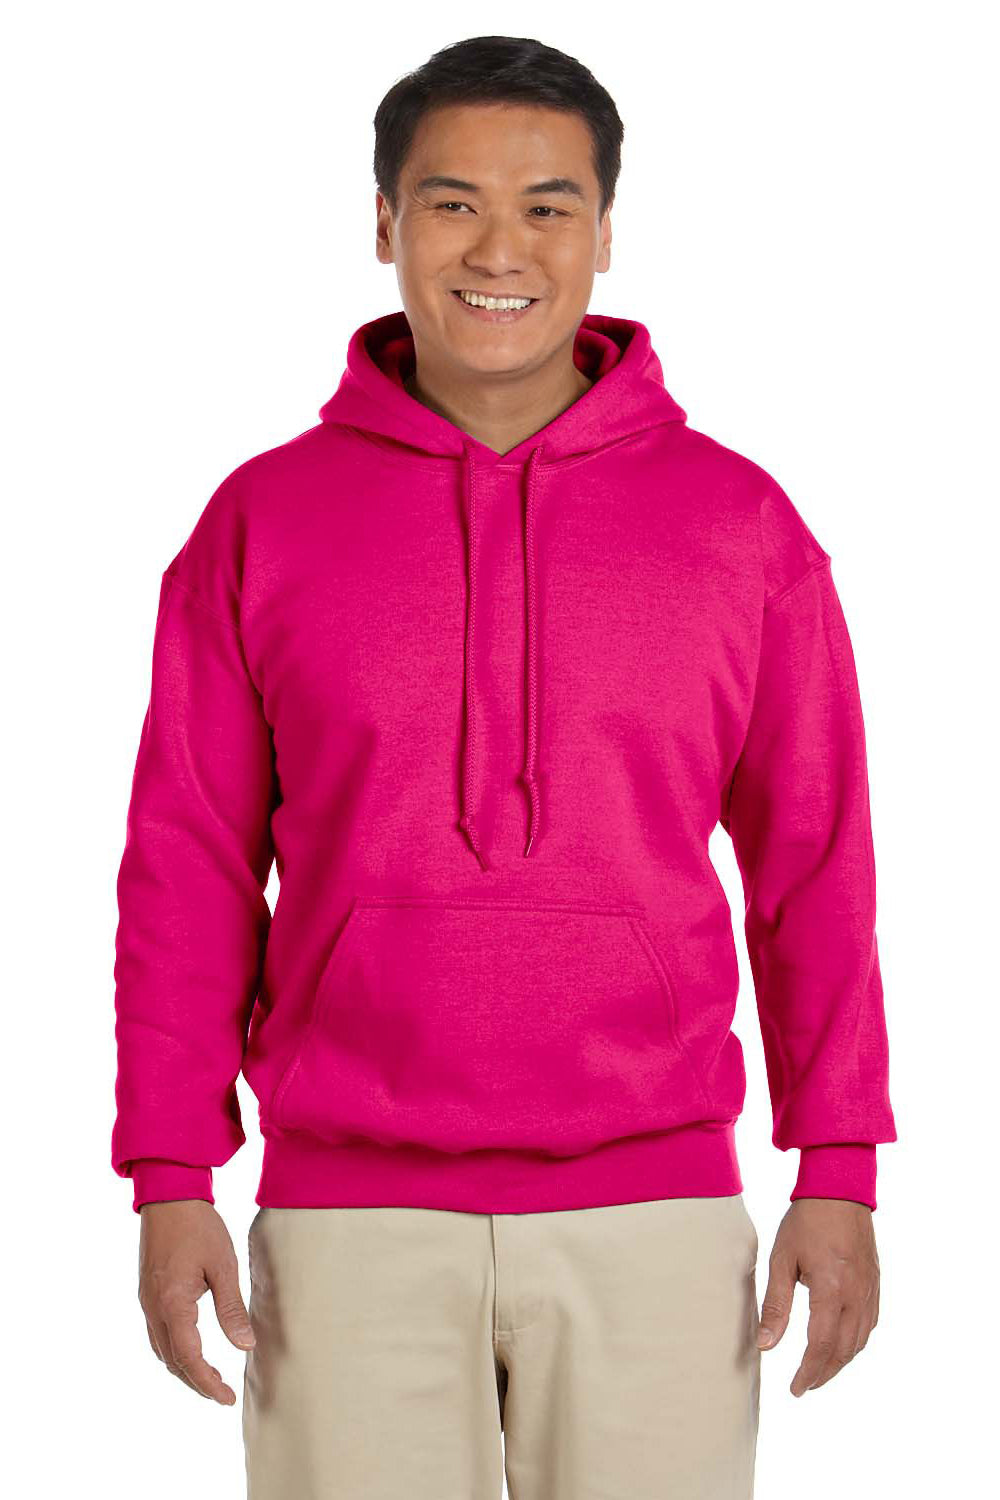 Mens Hoody Pullover Neon Pink Hoodie